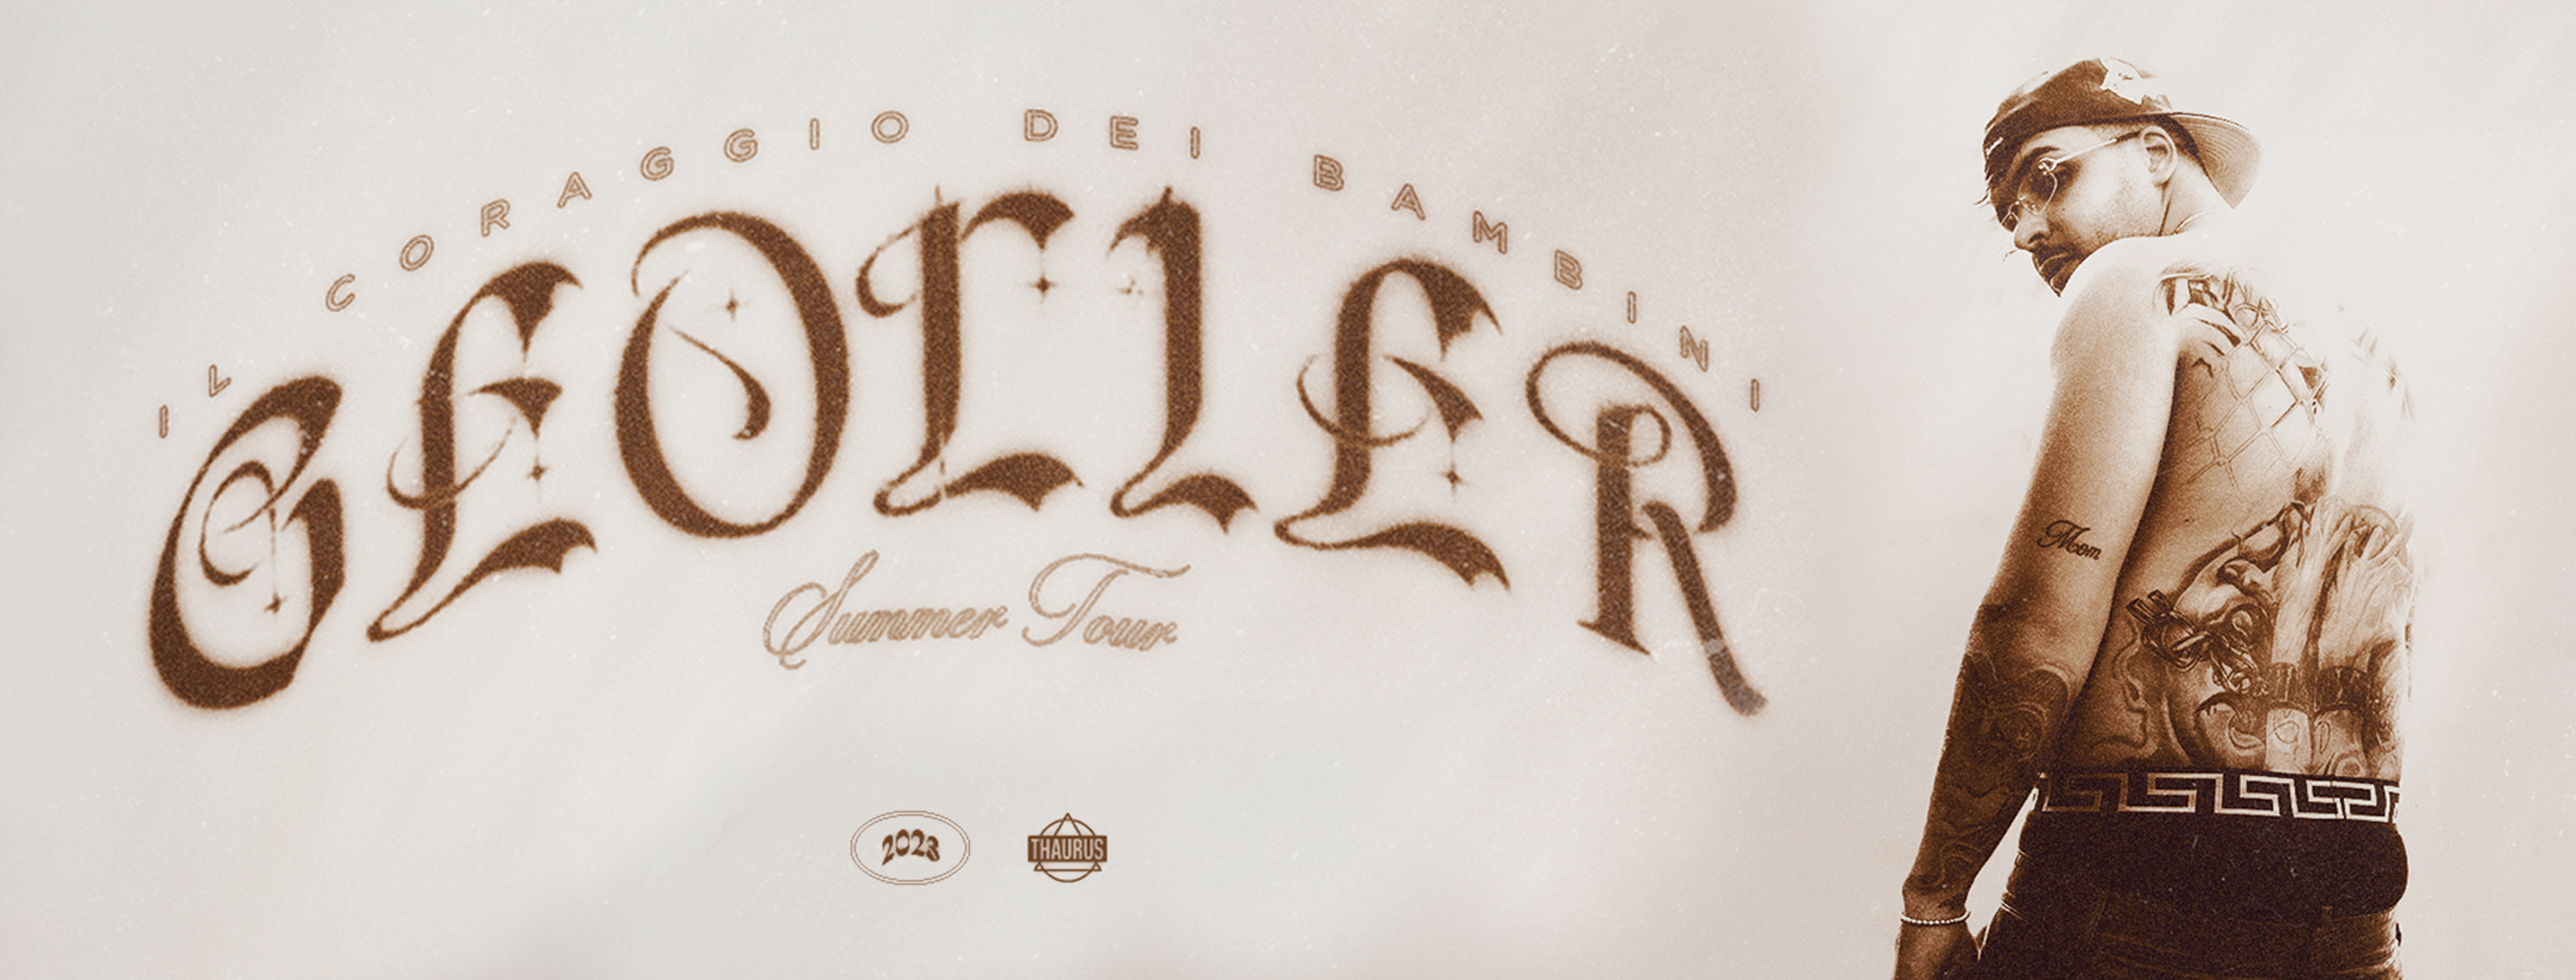 GEOLIER - "IL CORAGGIO DEI BAMBINI" SUMMER TOUR 2023